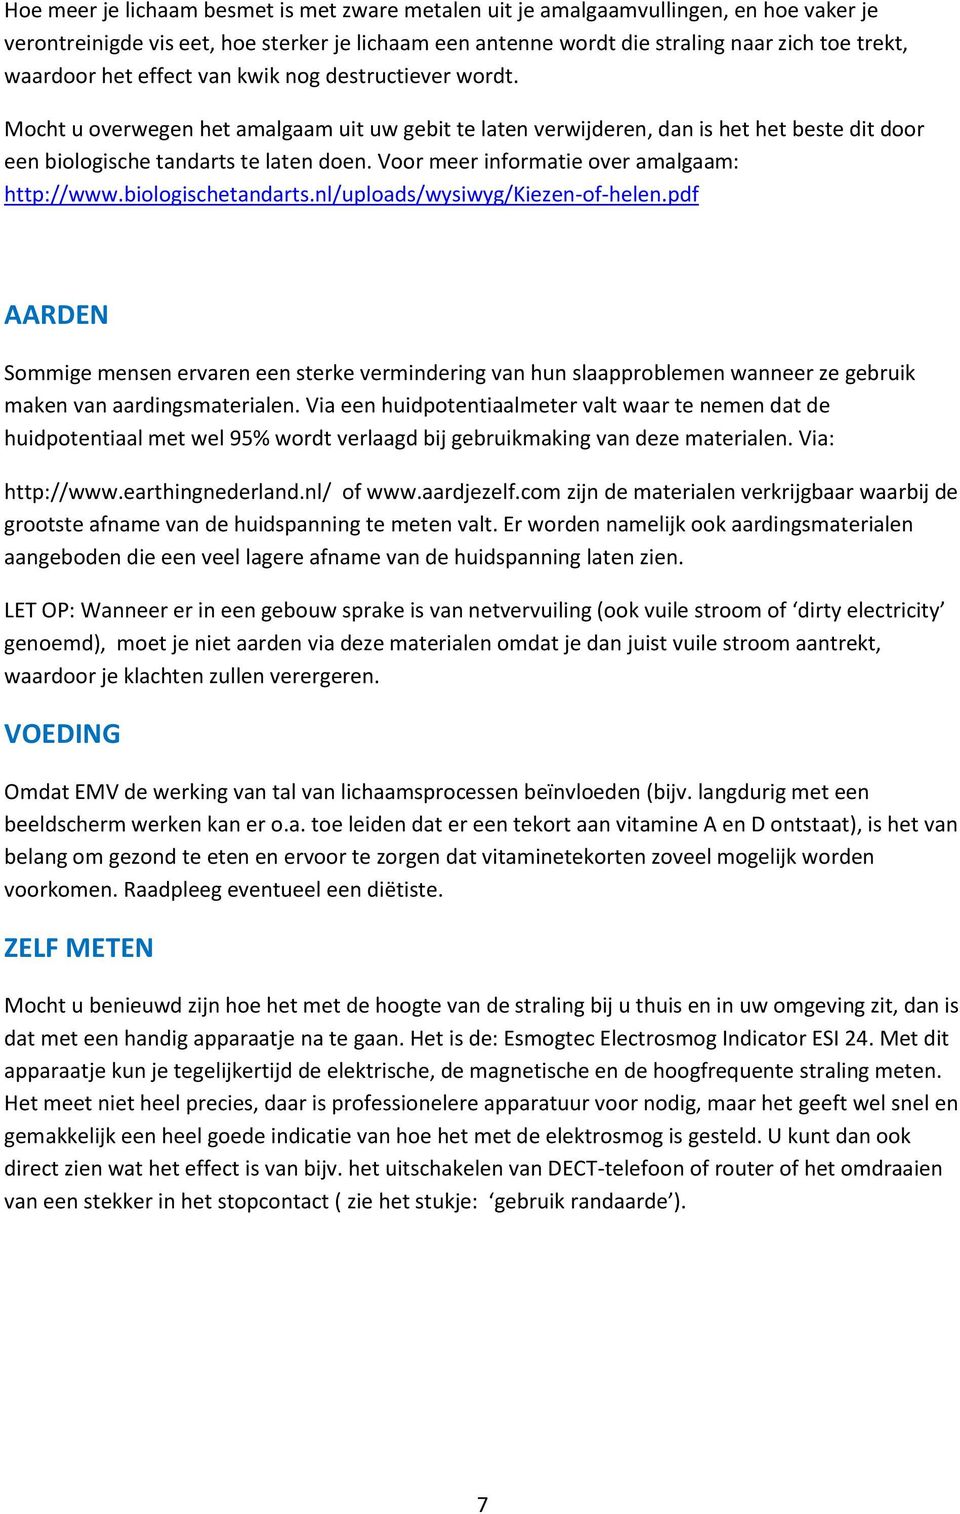 Voor meer informatie over amalgaam: http://www.biologischetandarts.nl/uploads/wysiwyg/kiezen-of-helen.